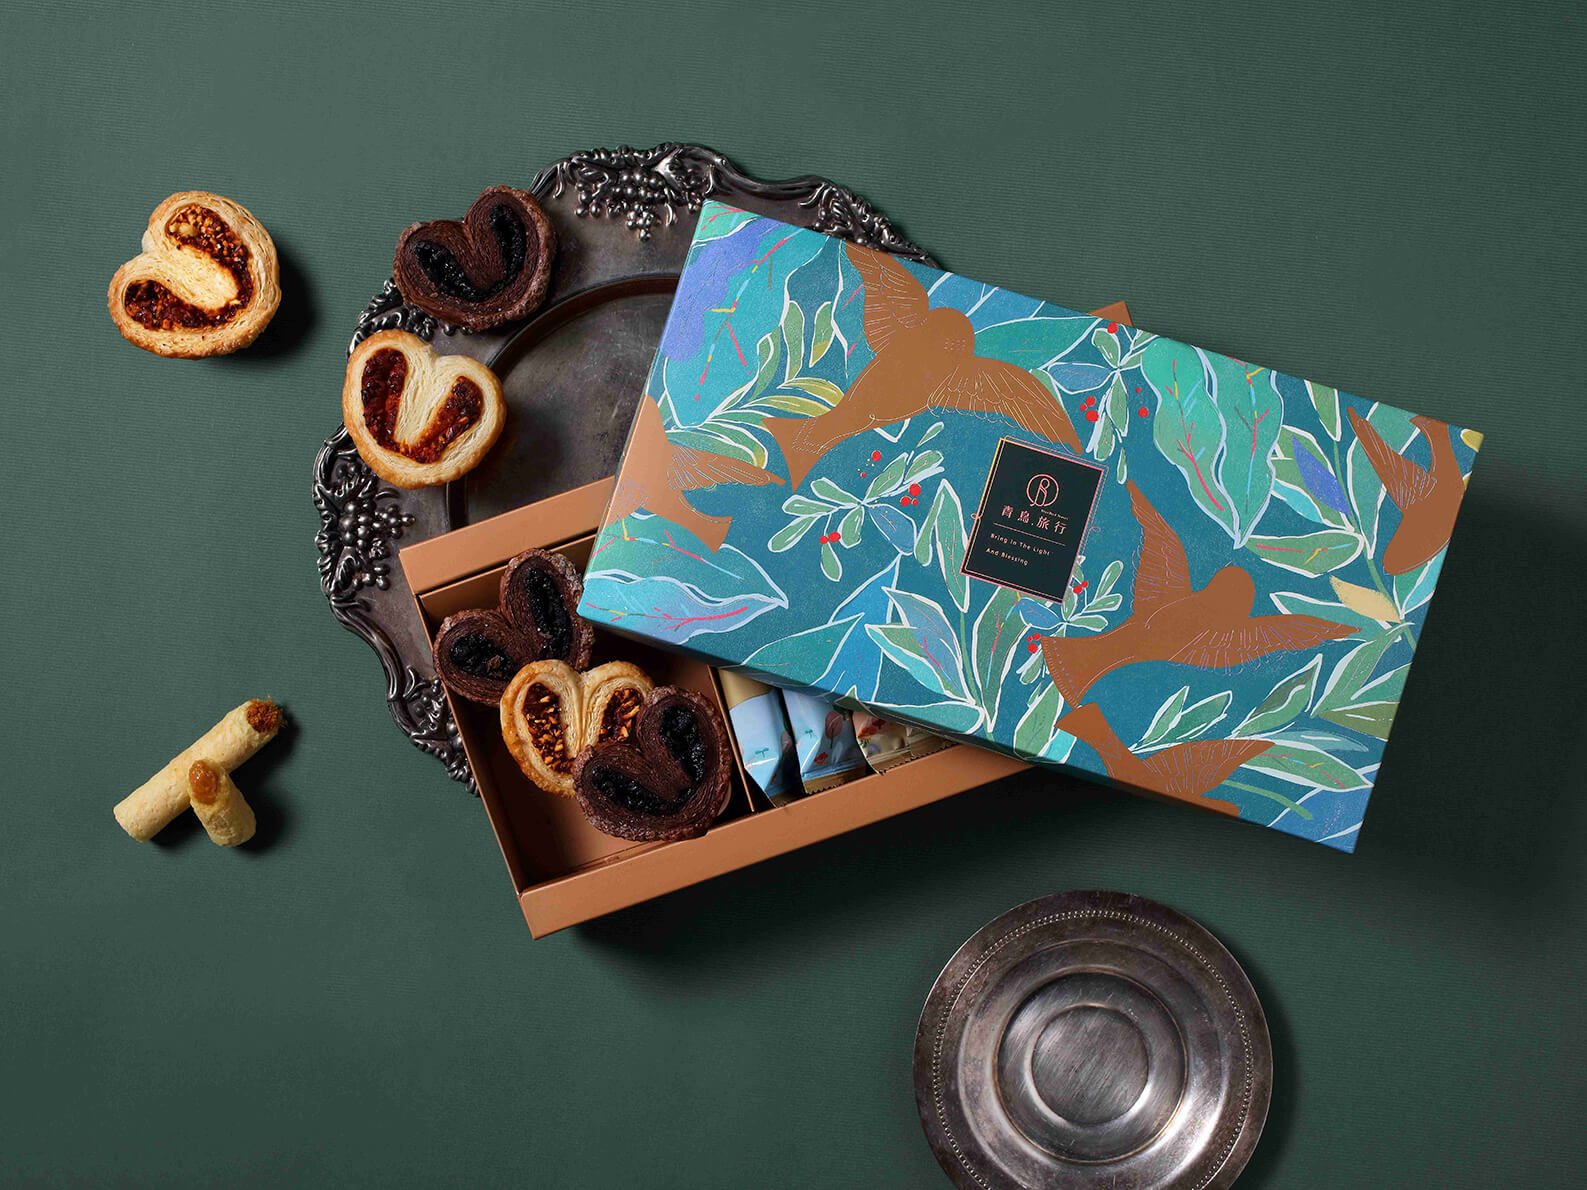 青鳥旅行端午禮盒採手繪風設計 新品夾餡蝴蝶酥上市